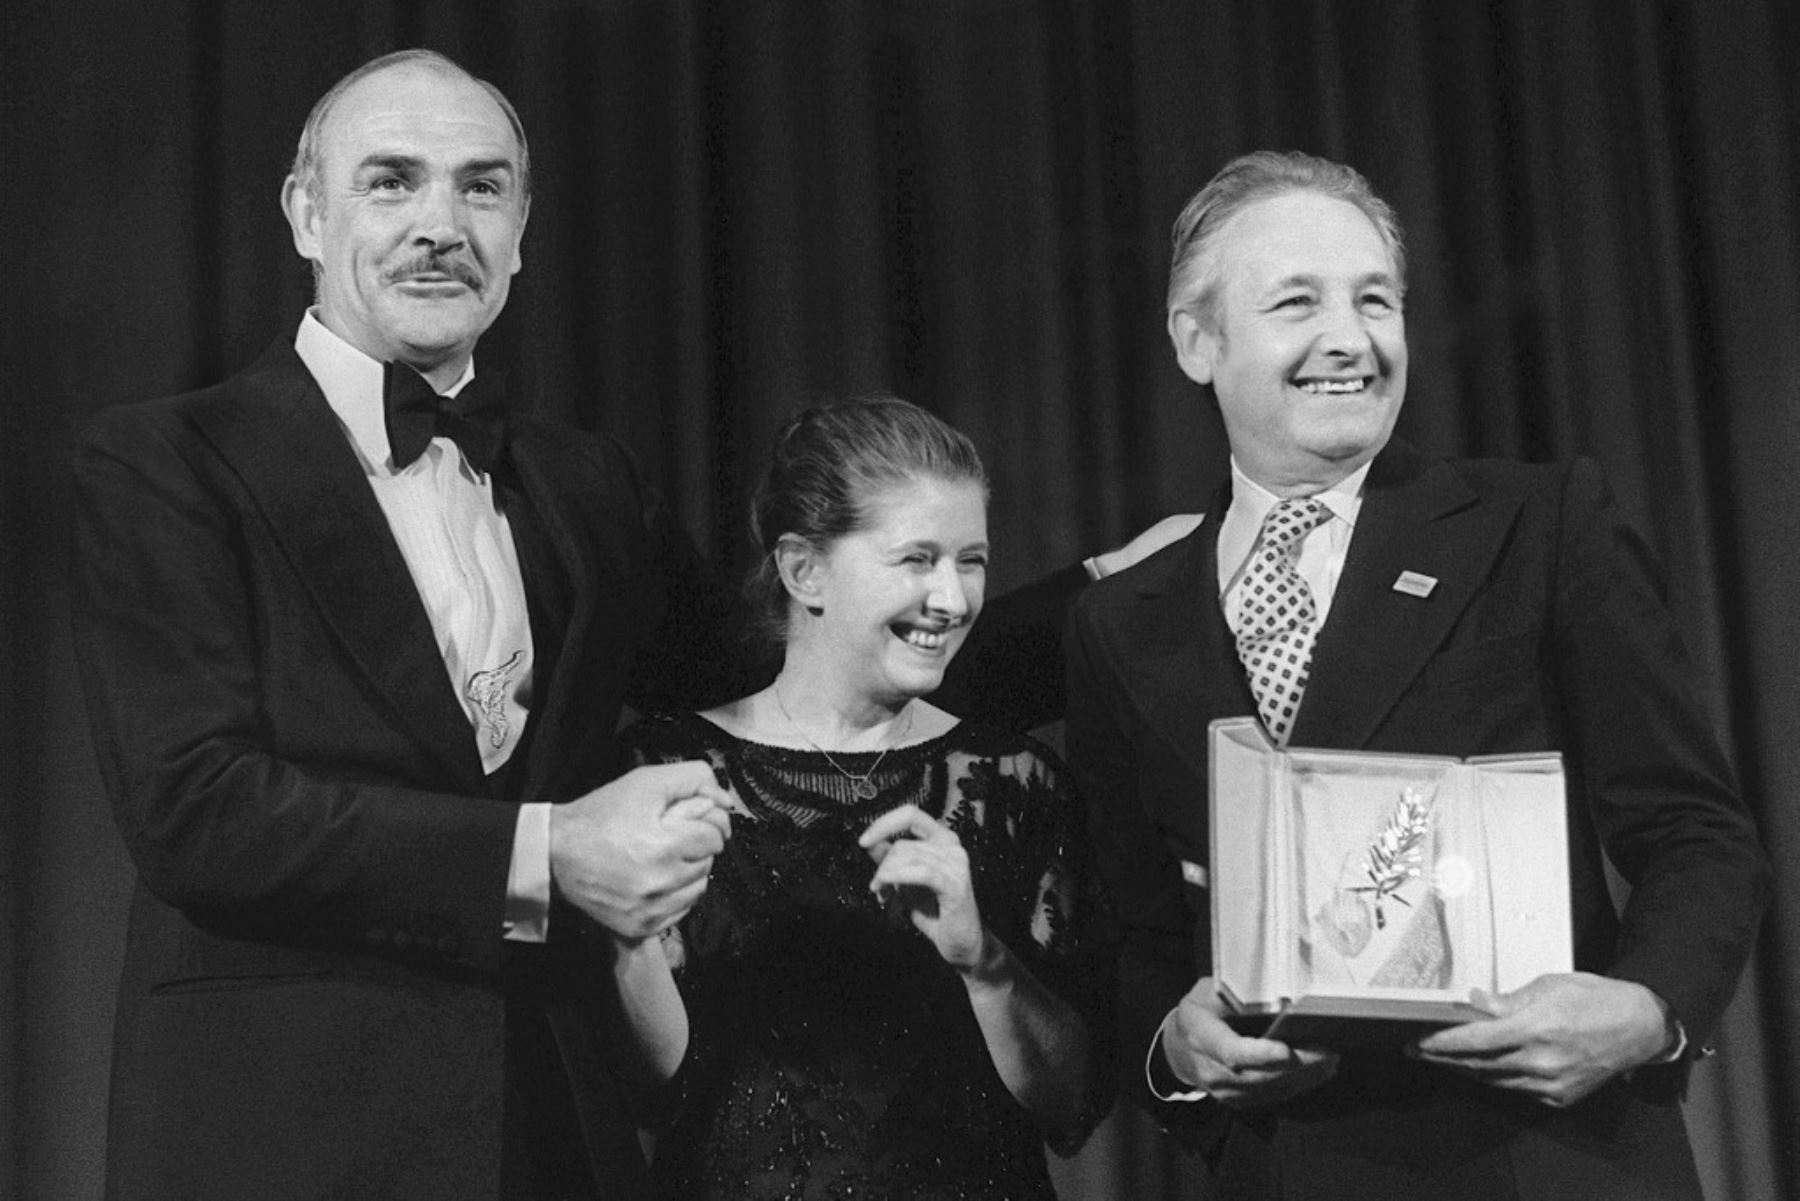 El actor escocés Sean Connery, felicita al cineasta polaco Andrzej Wajda.Después de que le concedieran la Palma de Oro el 27 de mayo de 1981 al final del 34º Festival Internacional de Cine de Cannes por su película "Iron man". Foto:AFP